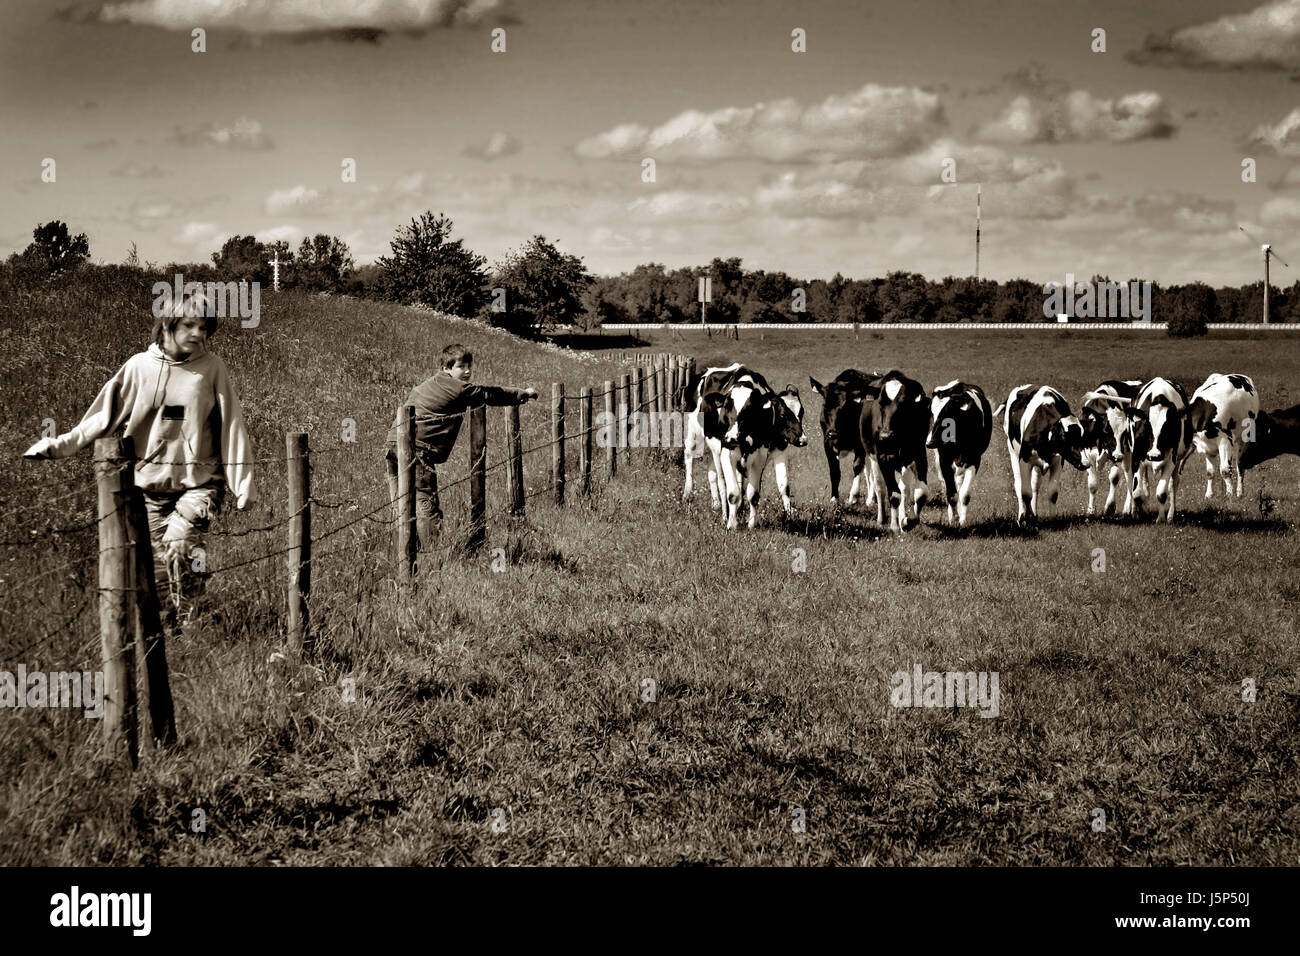 Hill bruno marrone brunette seppia recinzione vacche di campi di filo spinato oscurata dai toni Foto Stock